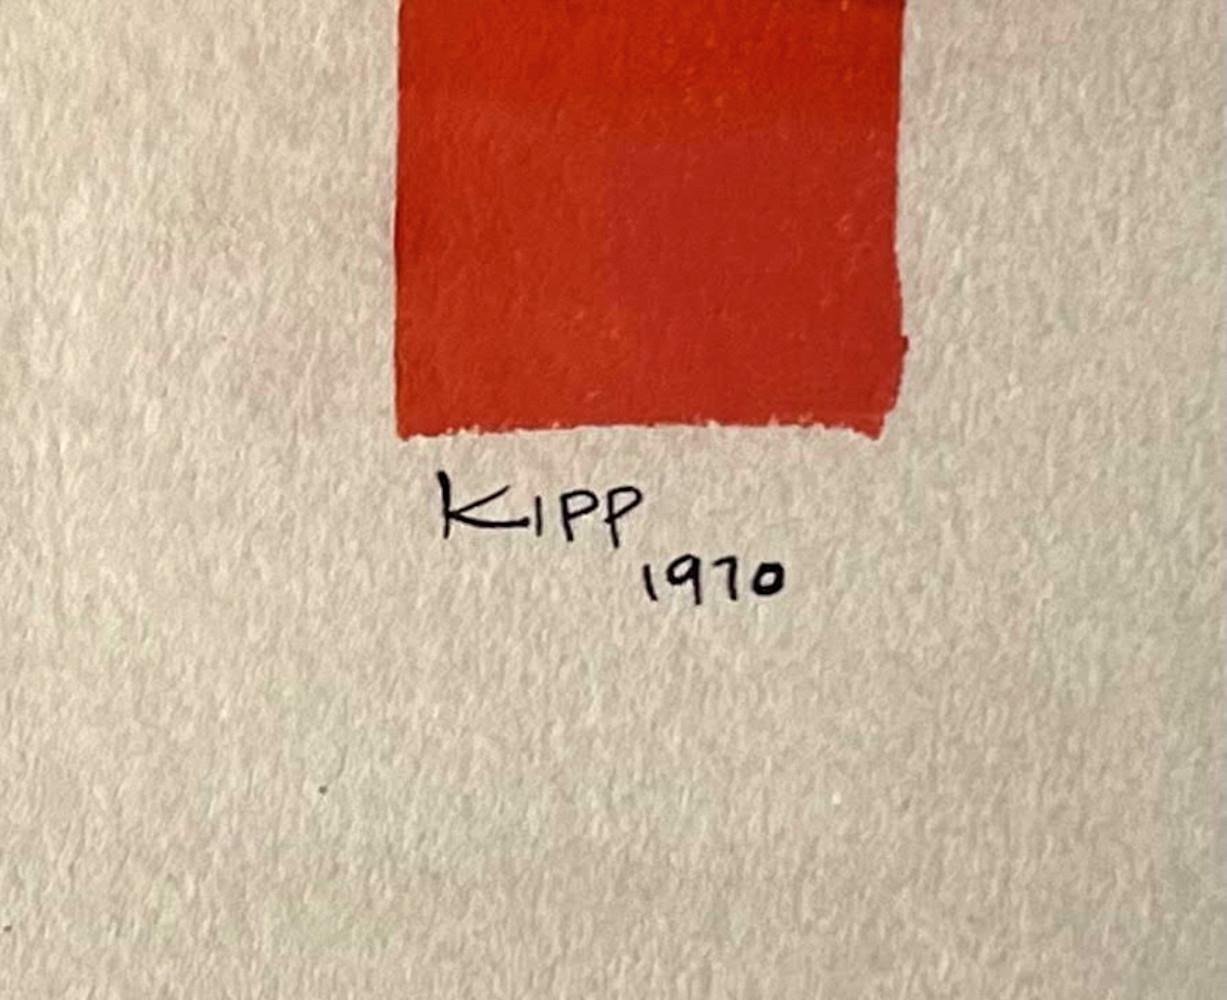 Einzigartige Malerei auf Papier mit Farbrolle von Minimalist Pioneer Lyman Kipp – Art von Lyman Kipp 